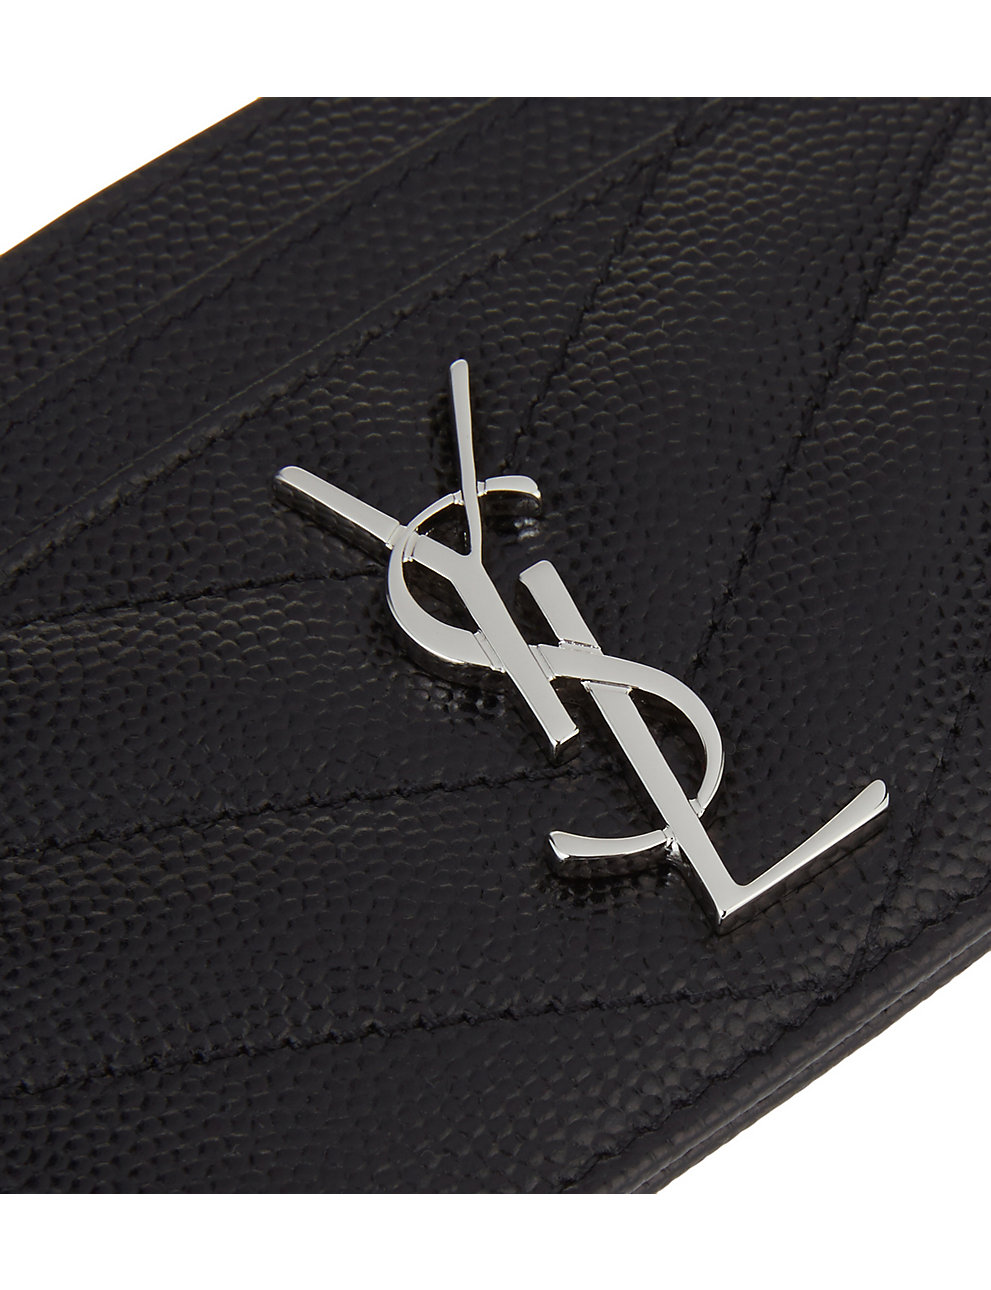 Saint Laurent Black Matte Leather Tiny Monogram Document Holder 607782  1JB0U 1000 3615092032258 - Handbags - Jomashop